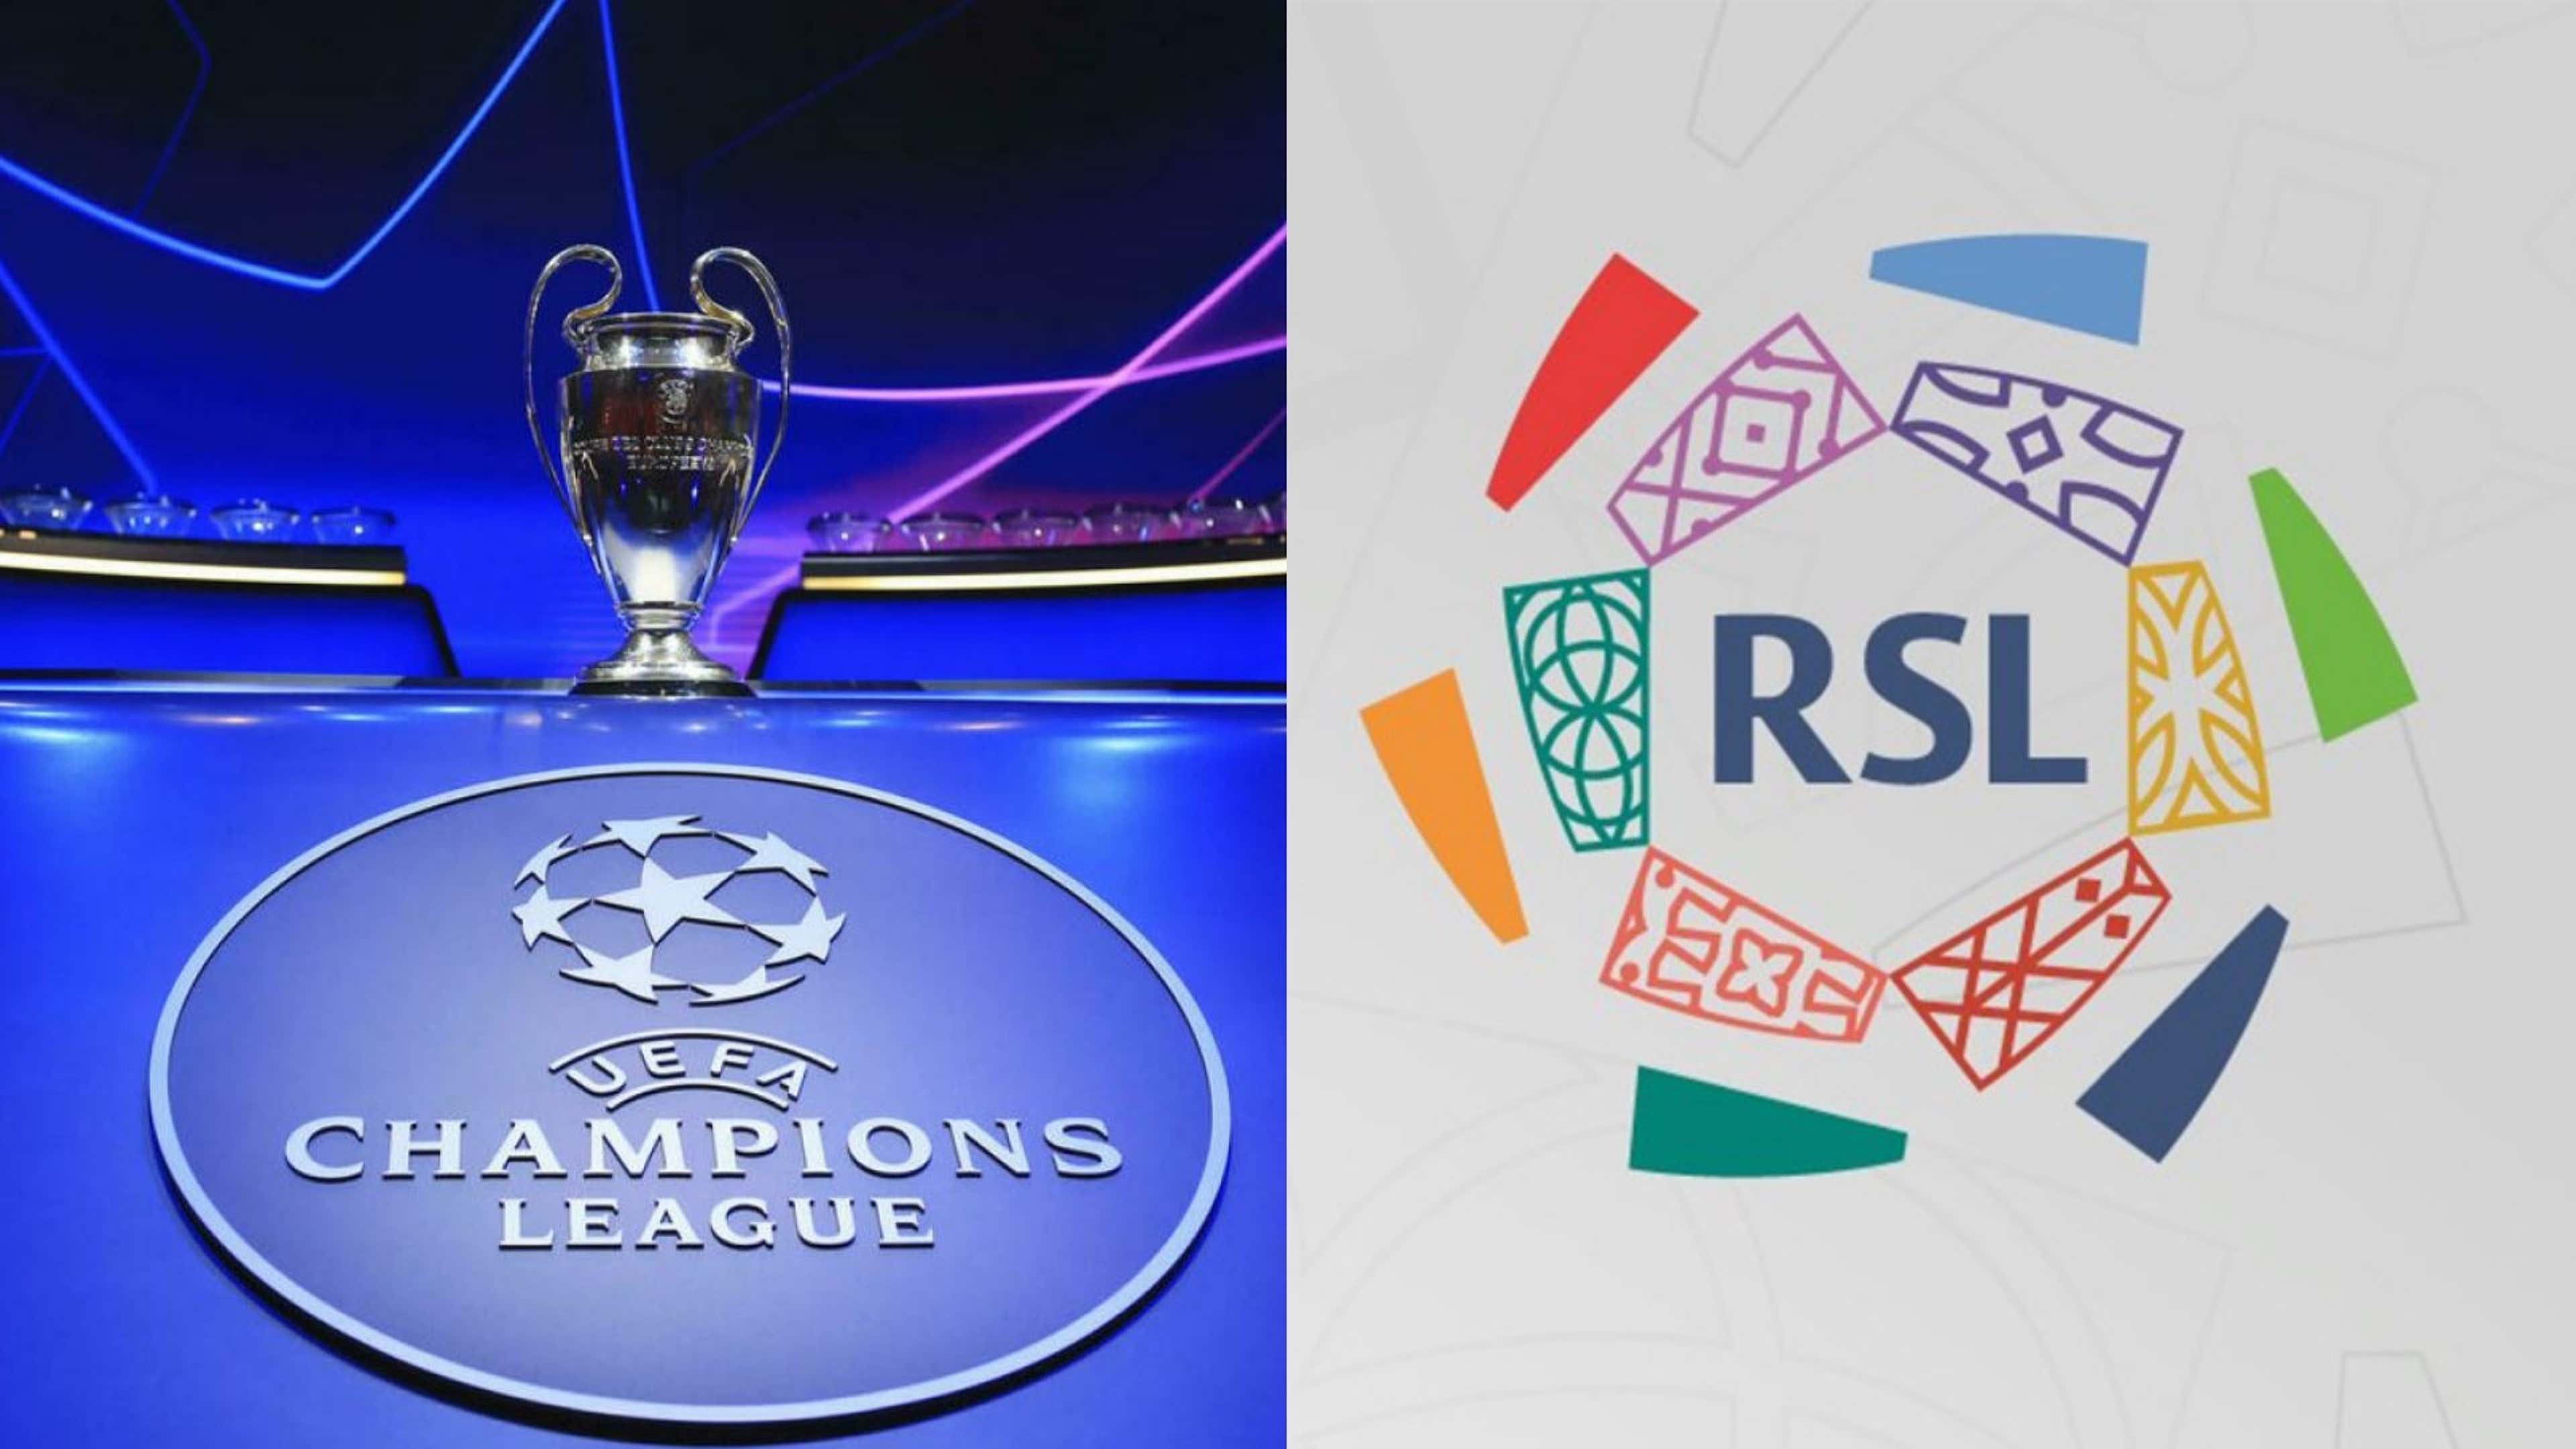 UEFA Champions League - RSL Saudi League